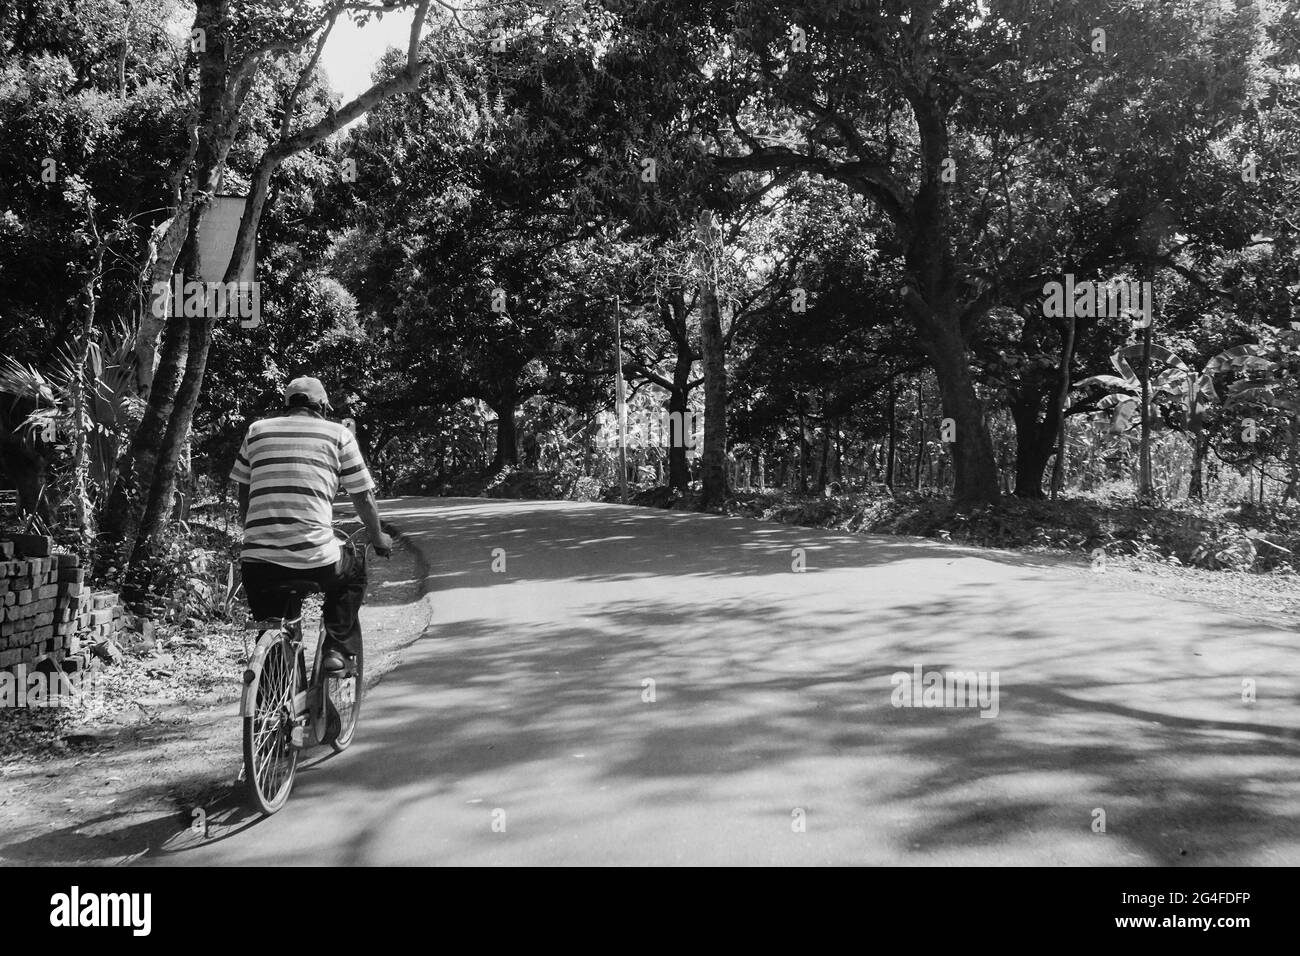 Una strada del villaggio illuminata dal sole con alberi su entrambi i lati e una persona che passa attraverso su una bicicletta. Immagine in bianco e nero. Foto Stock